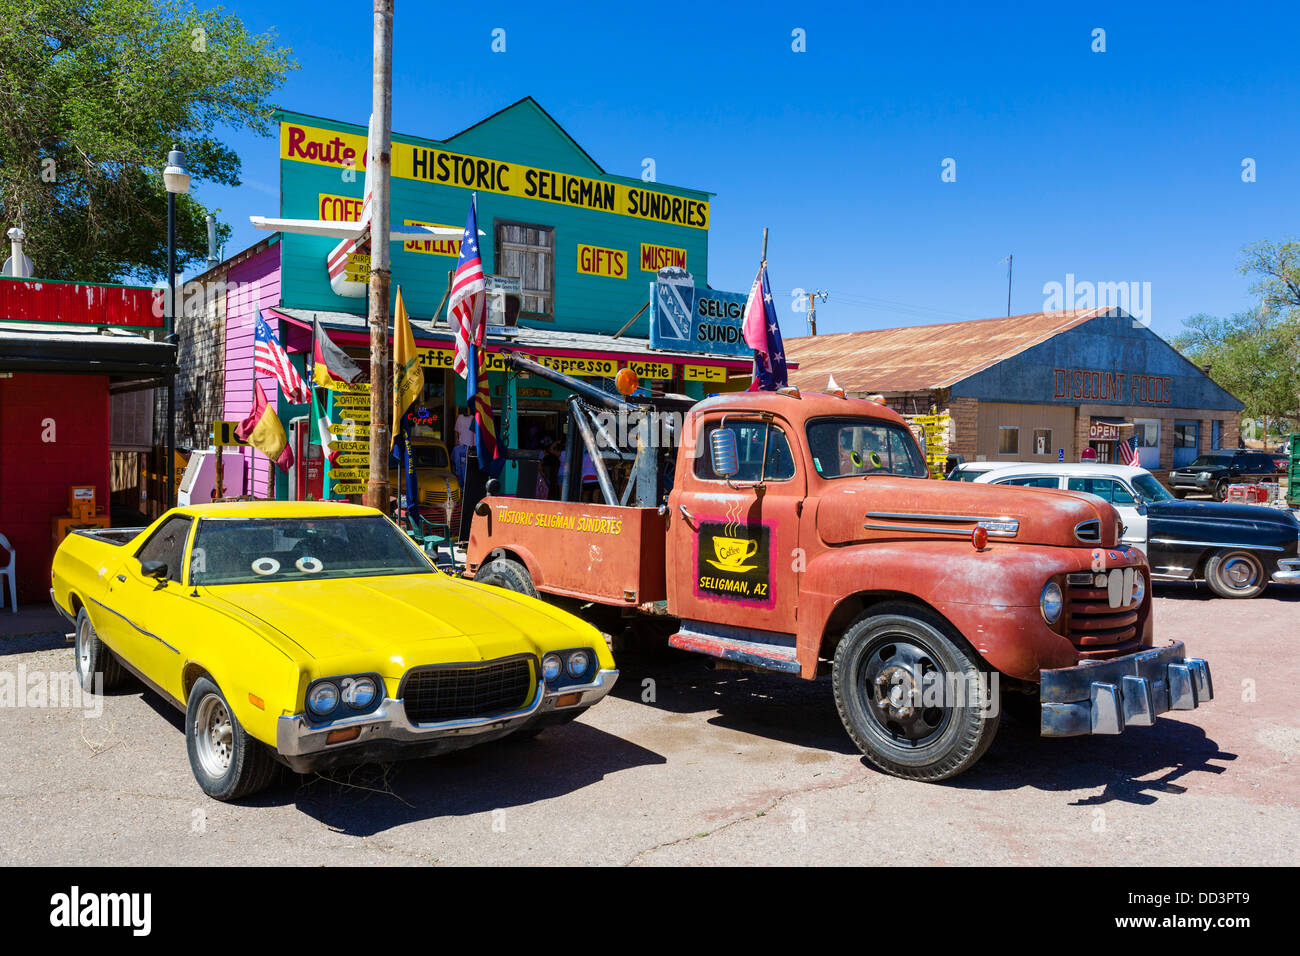 Vieilles voitures hors route 66 Seligman Articles divers store sur l'historique Route 66, Seligman, Arizona, USA Banque D'Images